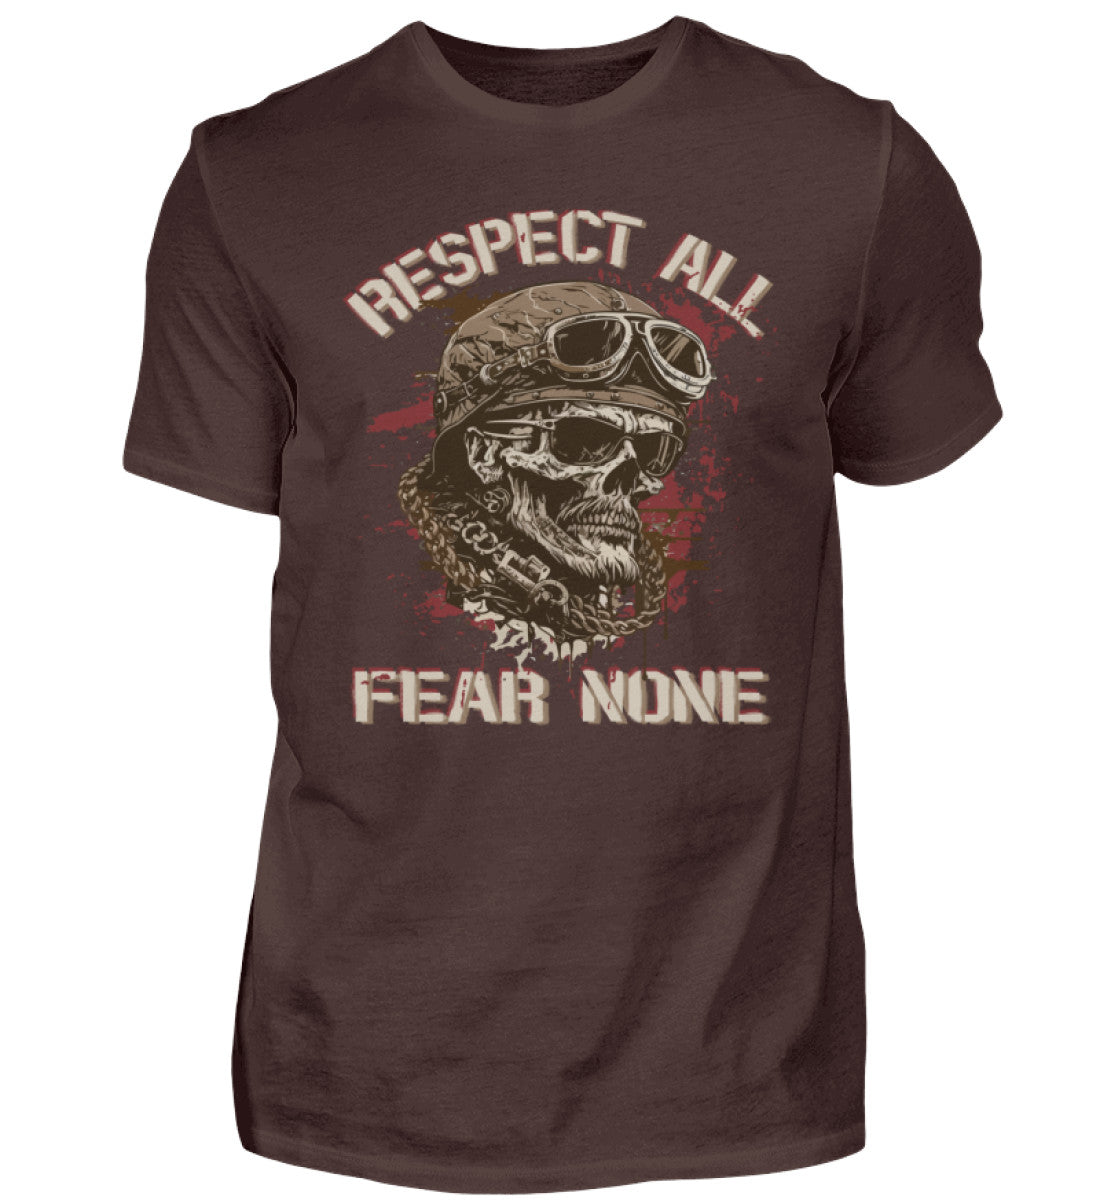 Ein Biker T-Shirt für Motorradfahrer von Wingbikers mit dem Aufdruck, Respect All - Fear None, in braun.